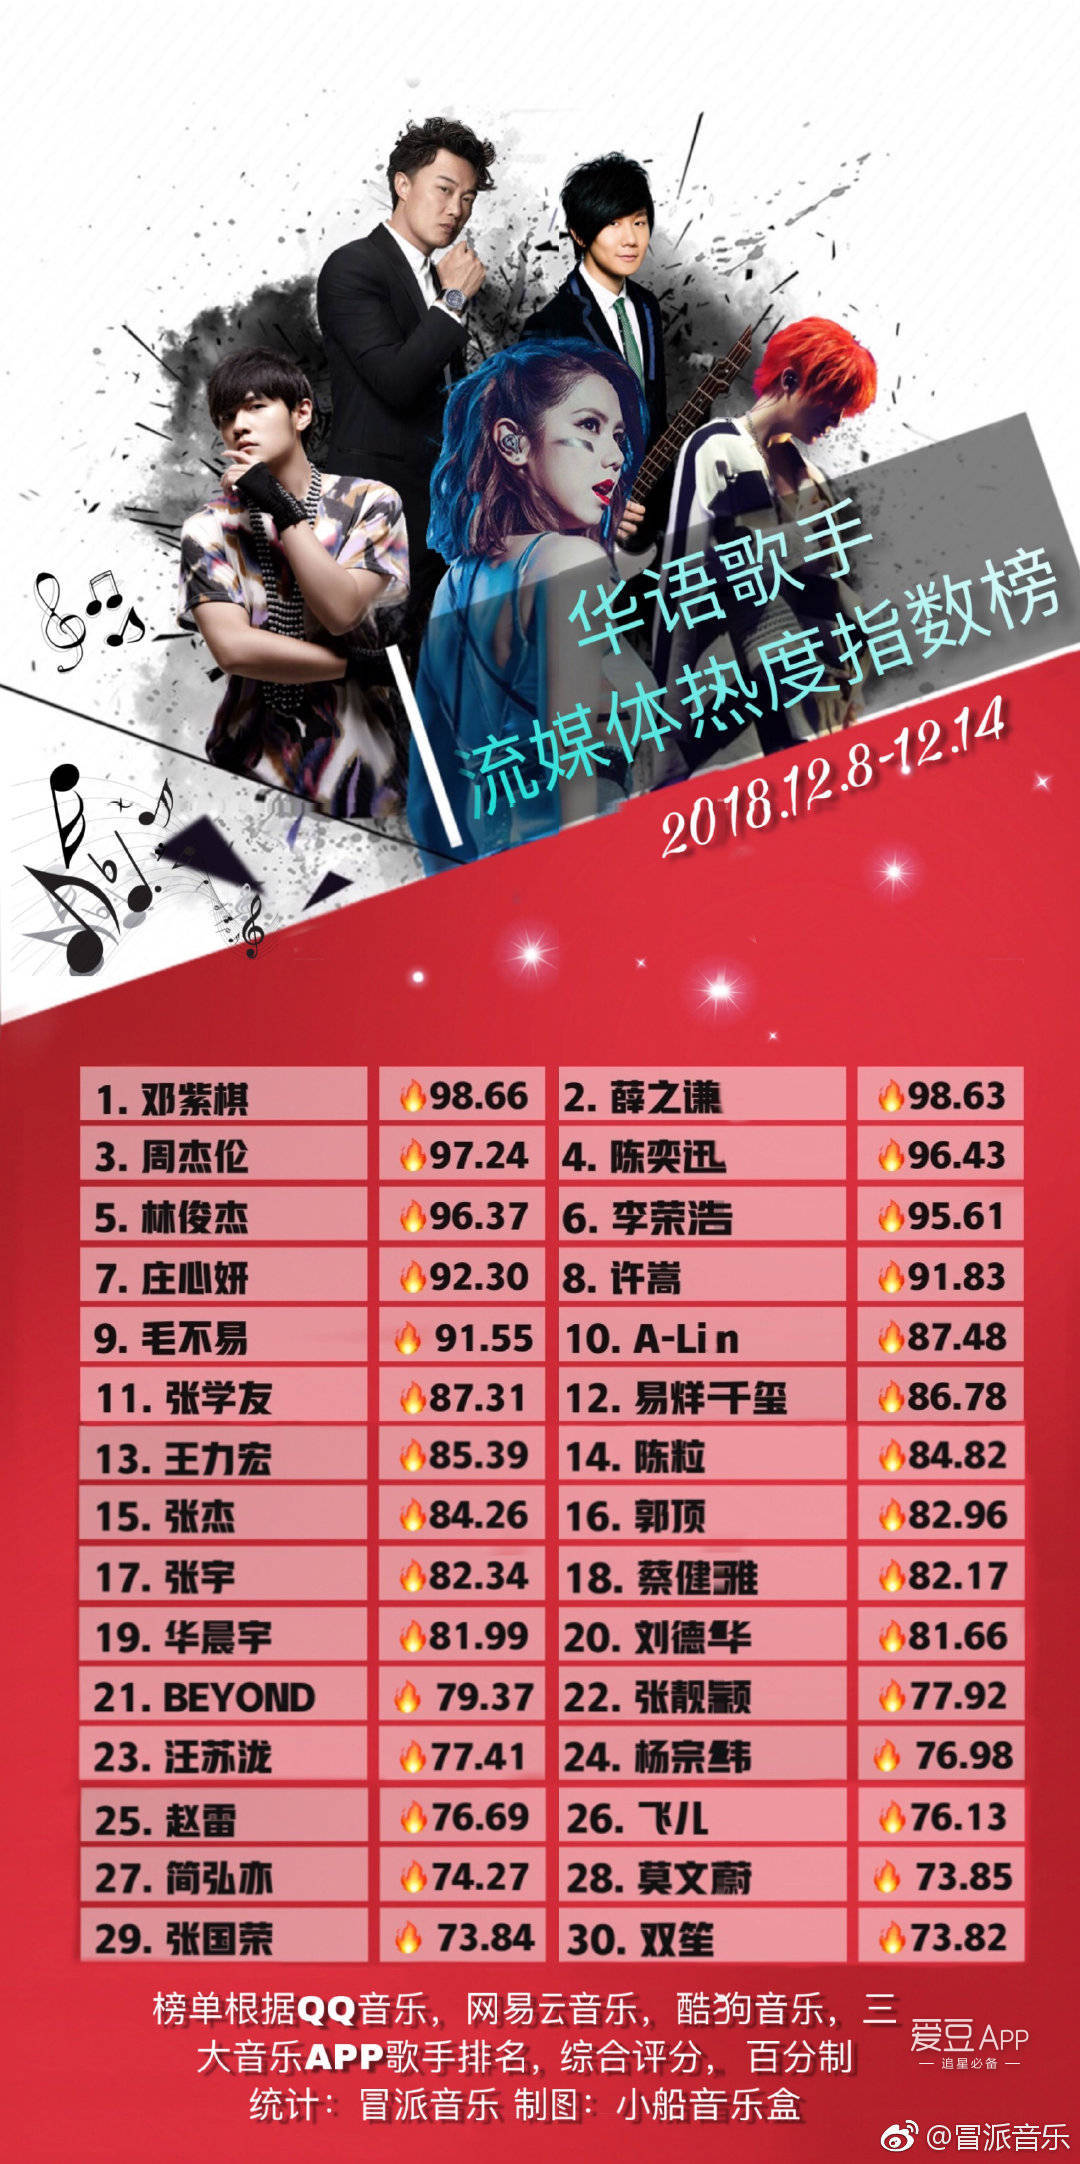 十二月第二周华语歌手排名 薛之谦重登男歌手部门冠军